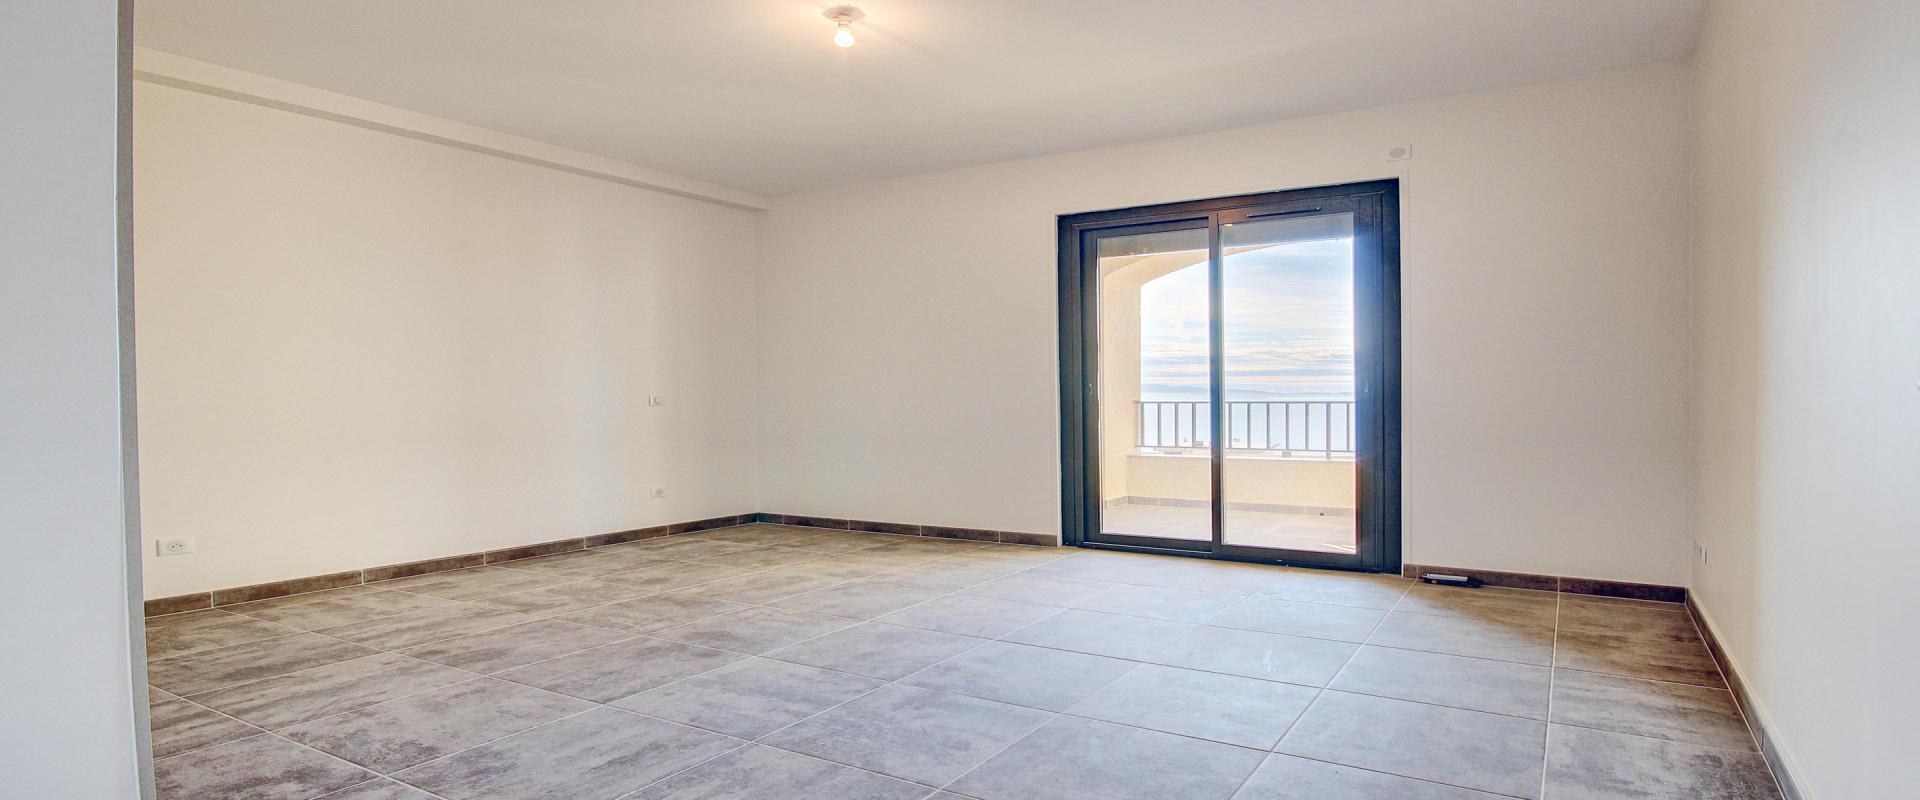 En Corse,à Ajaccio, sur la route des Sanguinaires, Vente d'un appartement de type F3 de 73 m²  avec terrasse et  vue mer